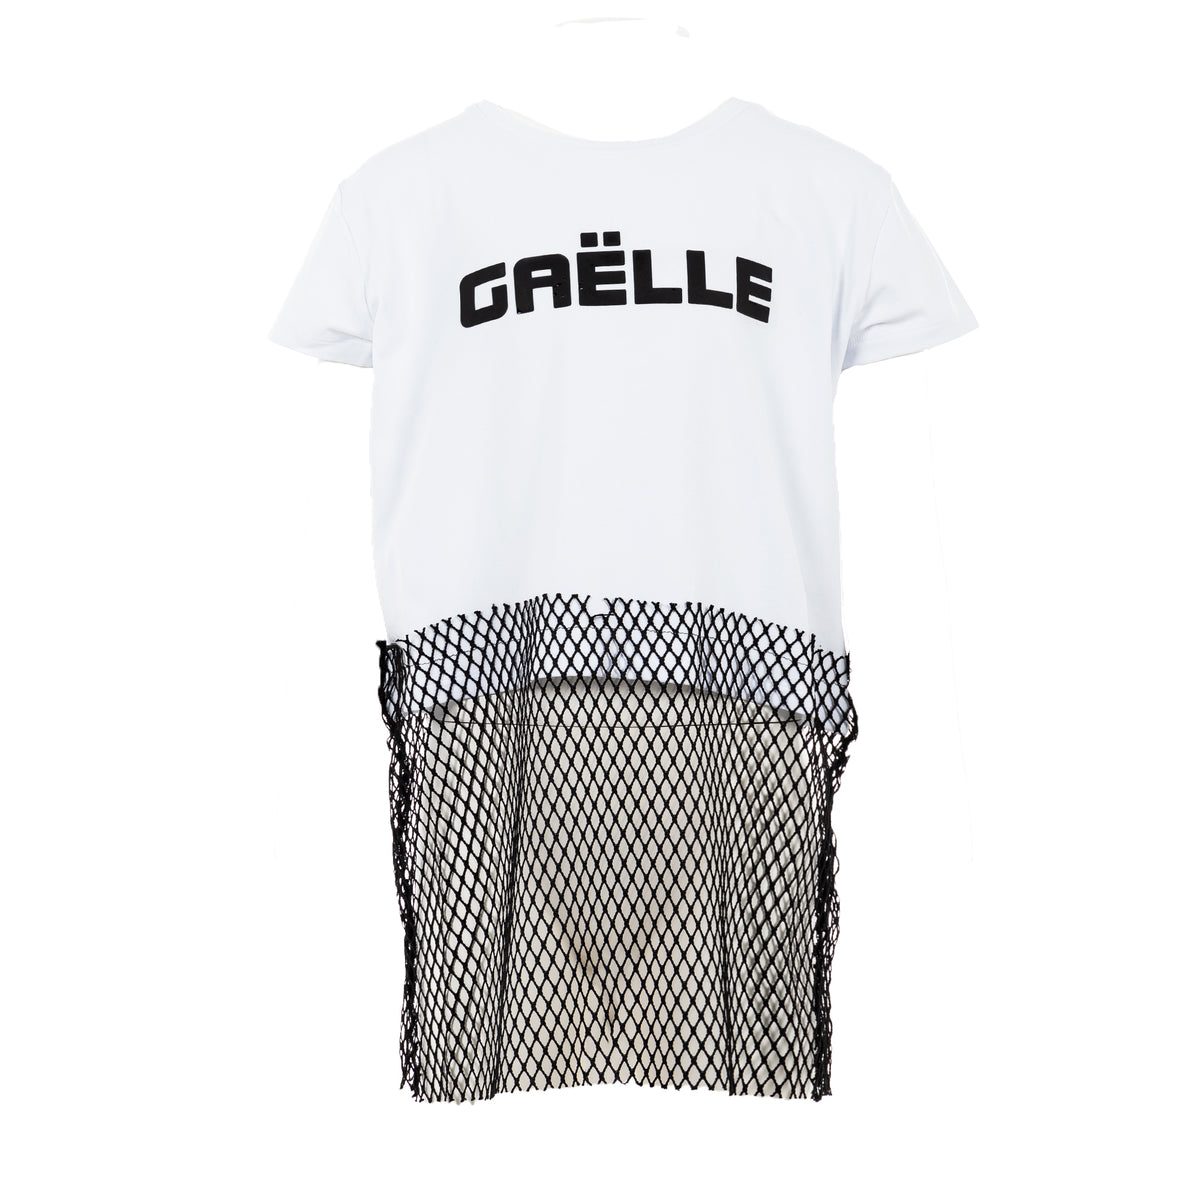 GAELLE PARIS | T-Shirt Bambina white | 2746M0058